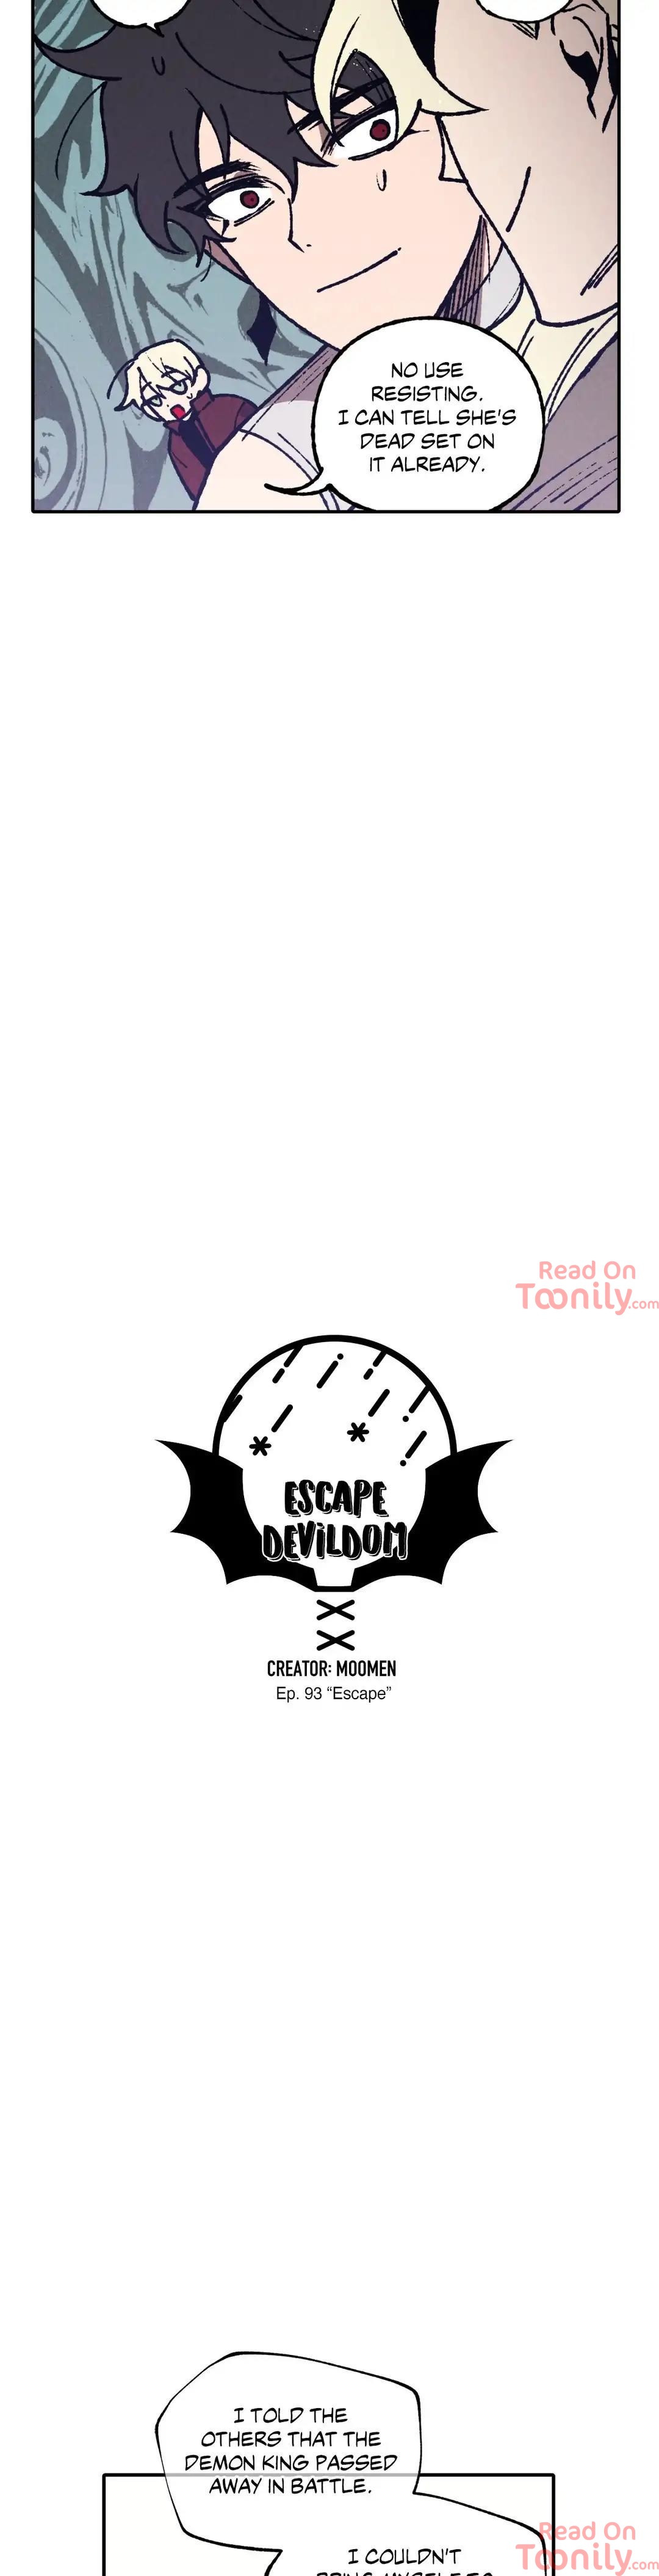 Escape Devildom image